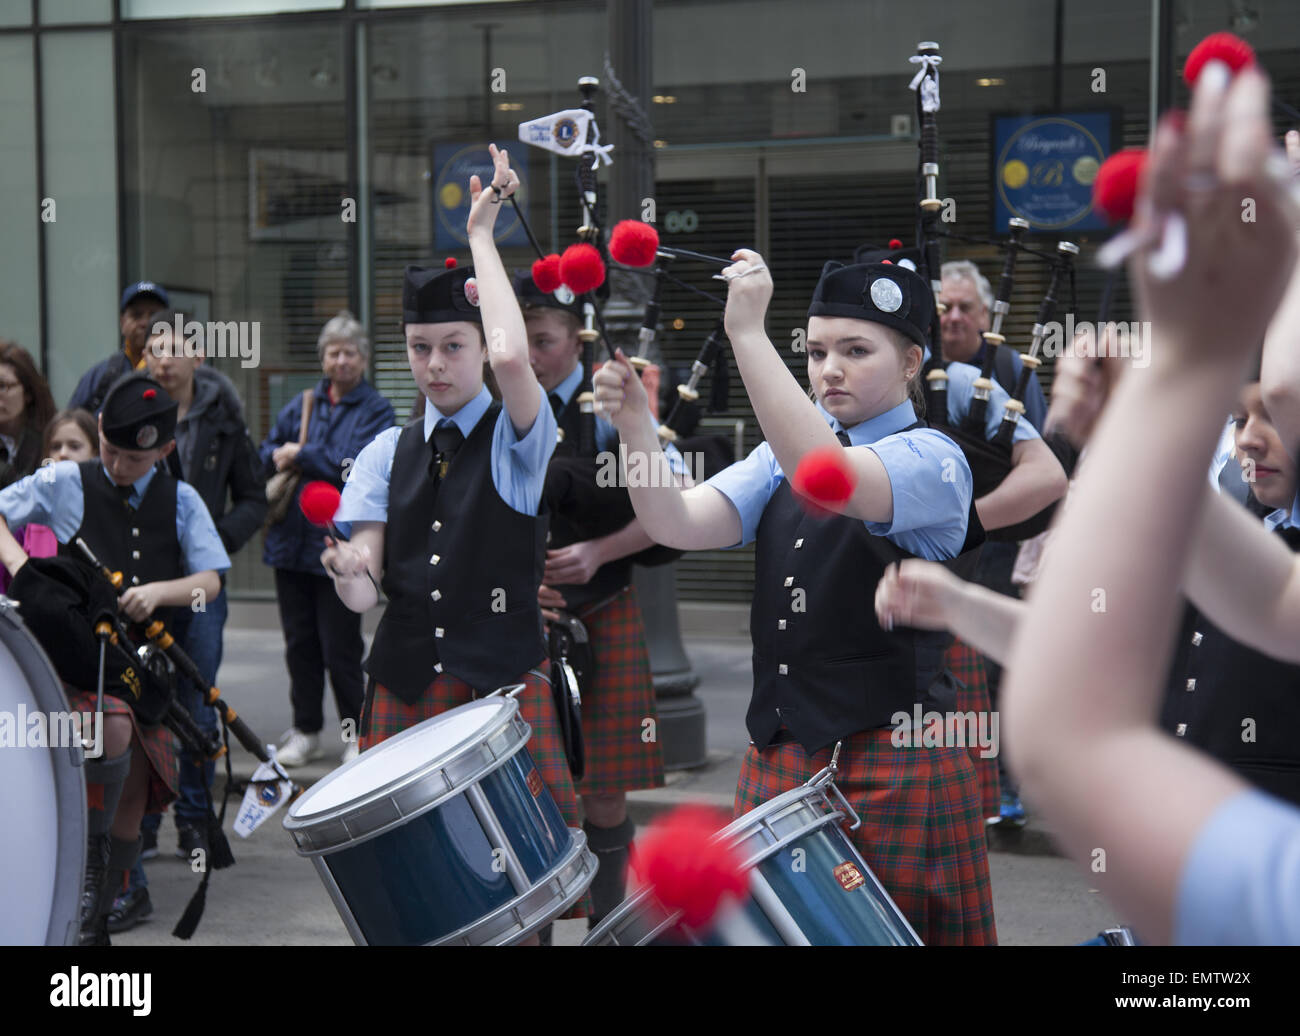 El desfile anual de tartán escocés todo se celebra en la Ciudad de Nueva York en la primavera de cada año. Foto de stock